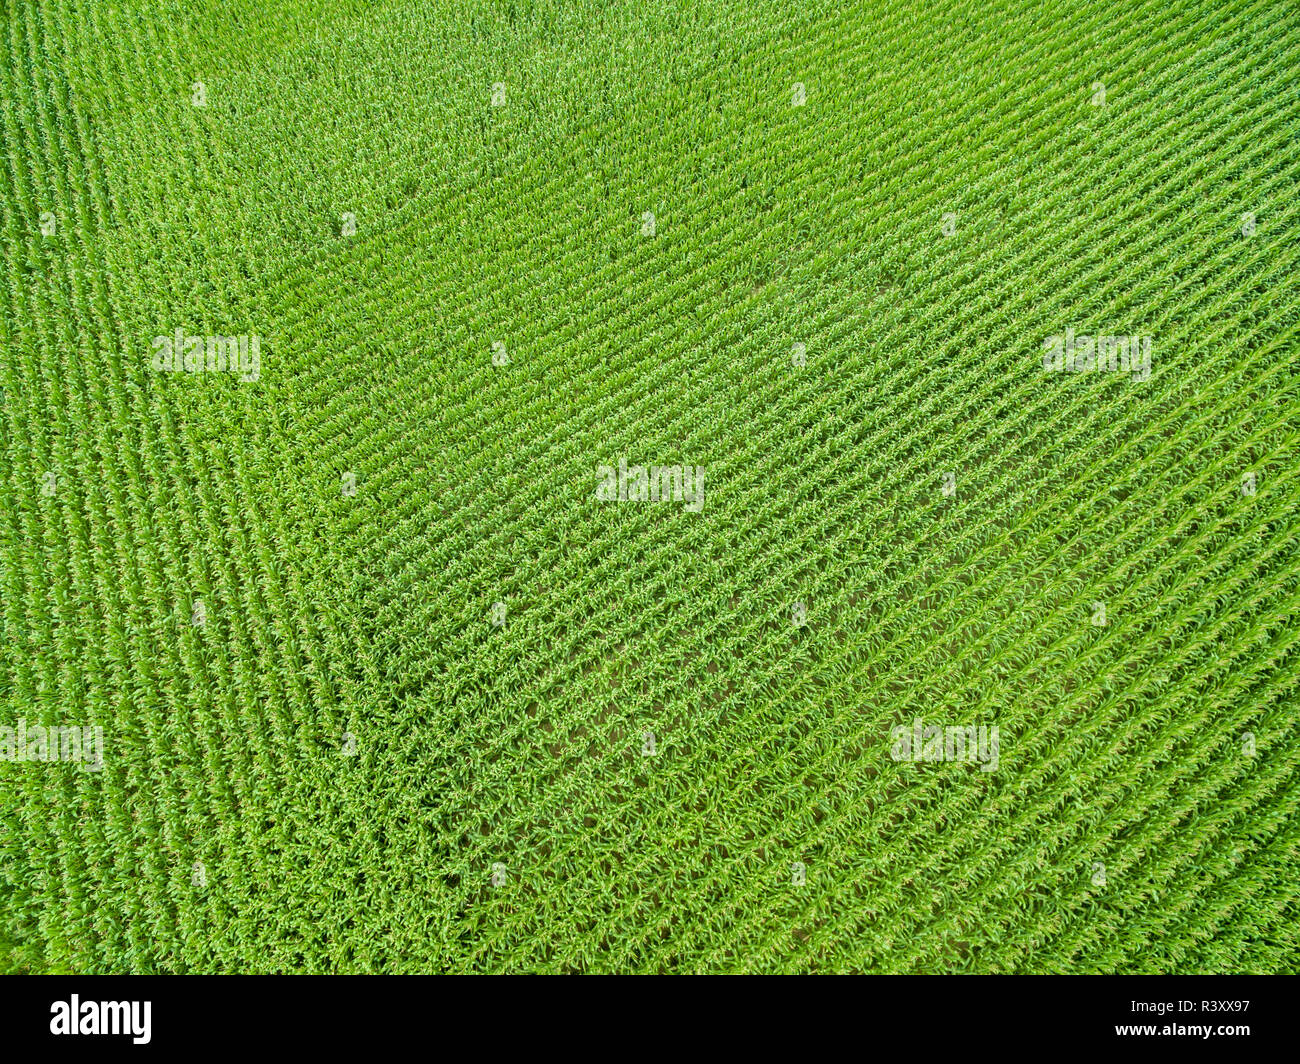 Corn field, Marion County, Illinois Stock Photo